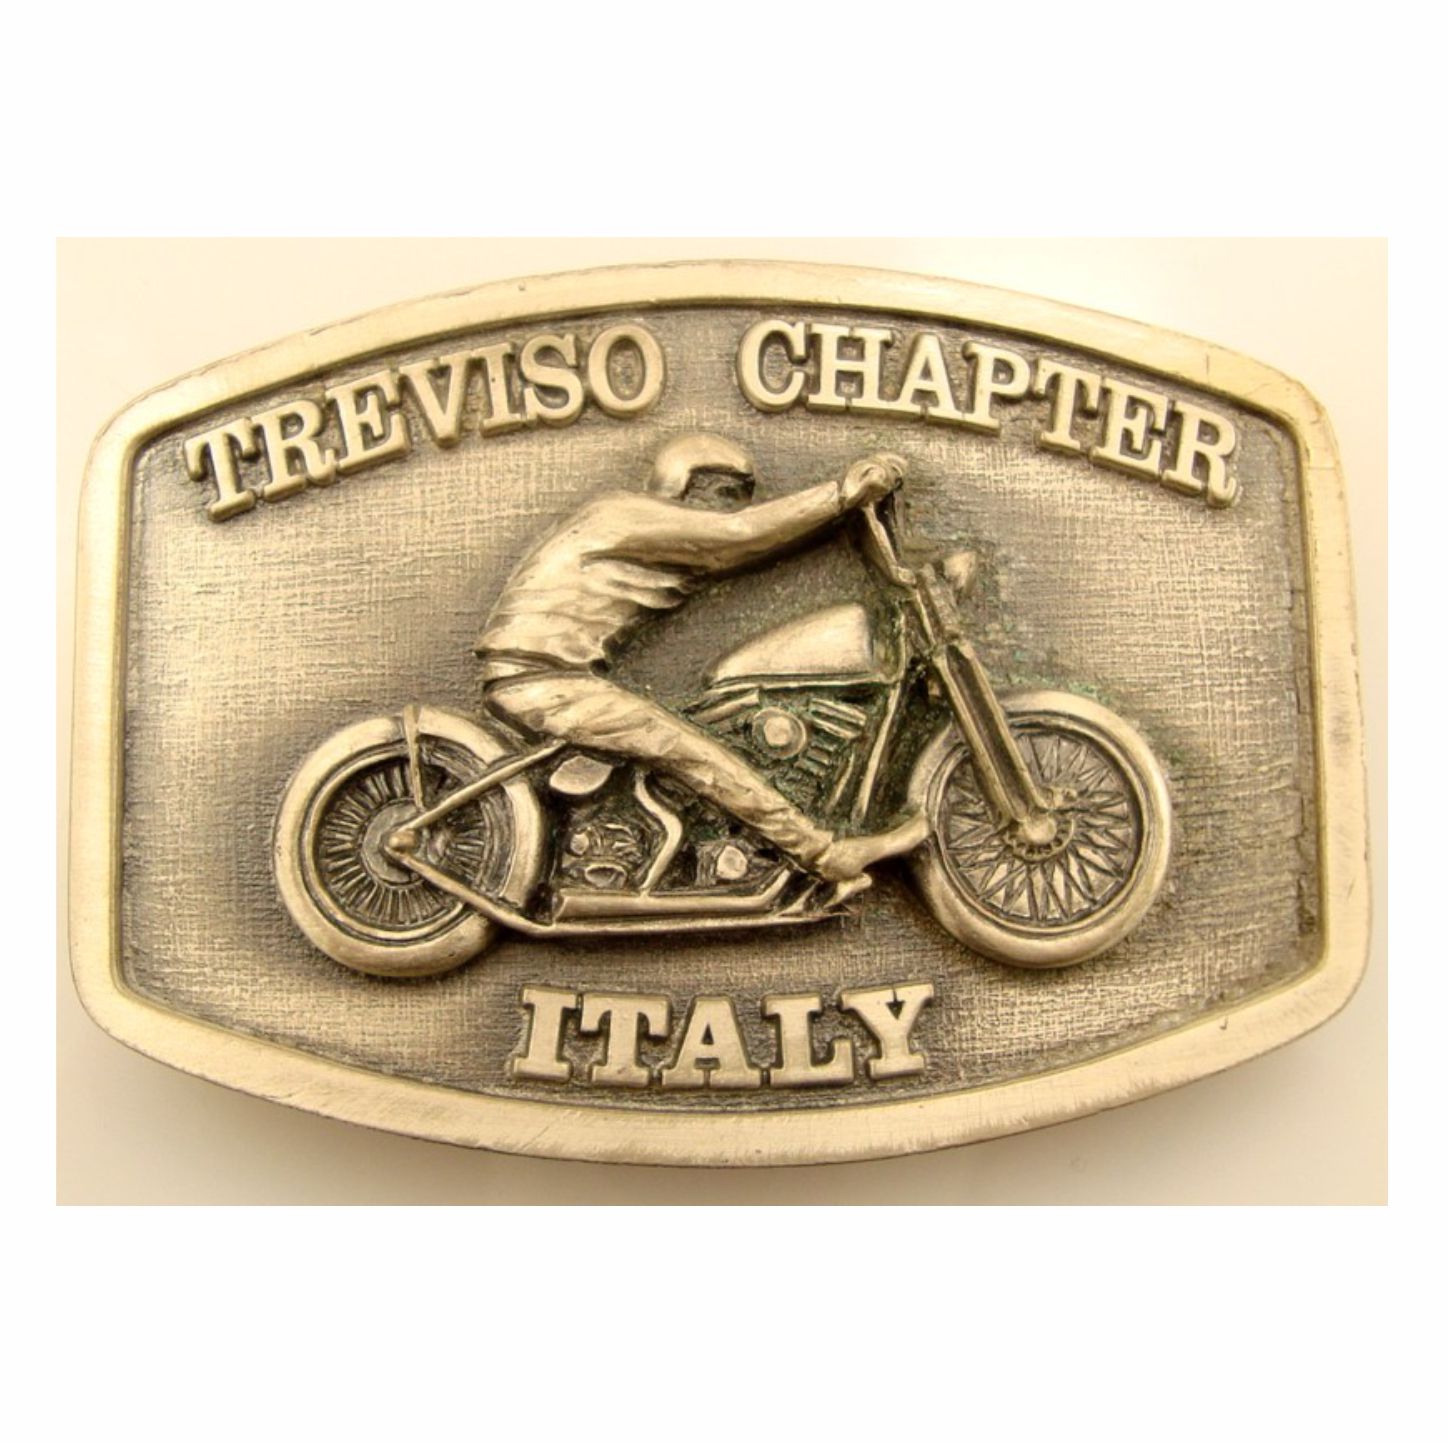 Fibbia personalizzata Treviso Chapter